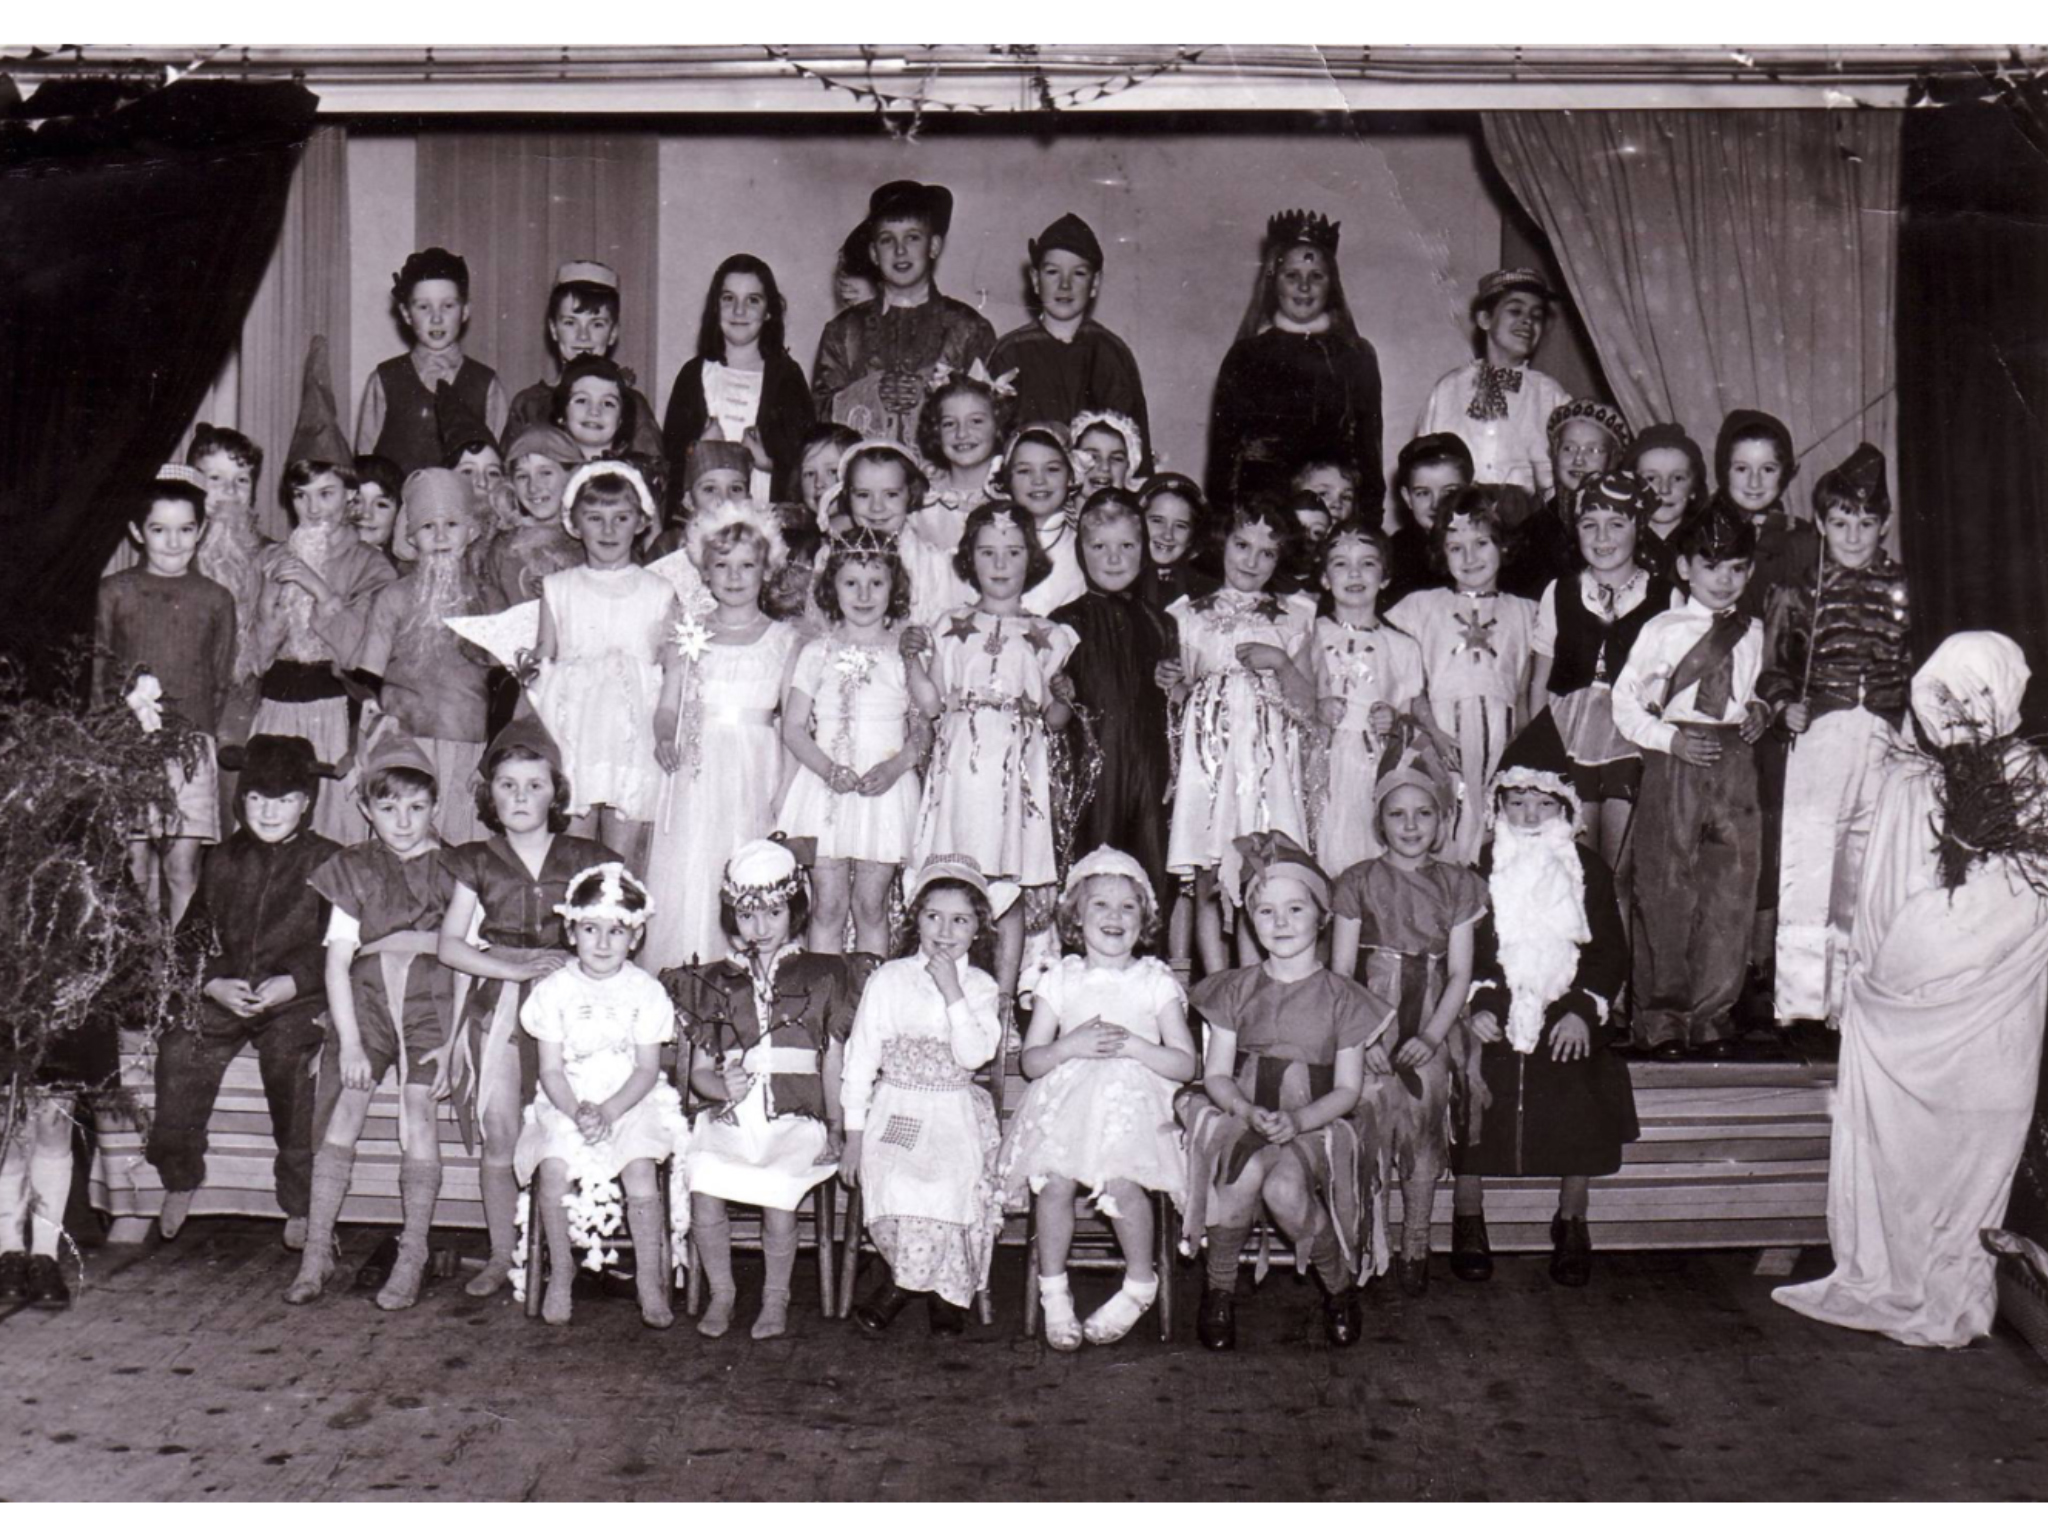 Bleadon school 1958